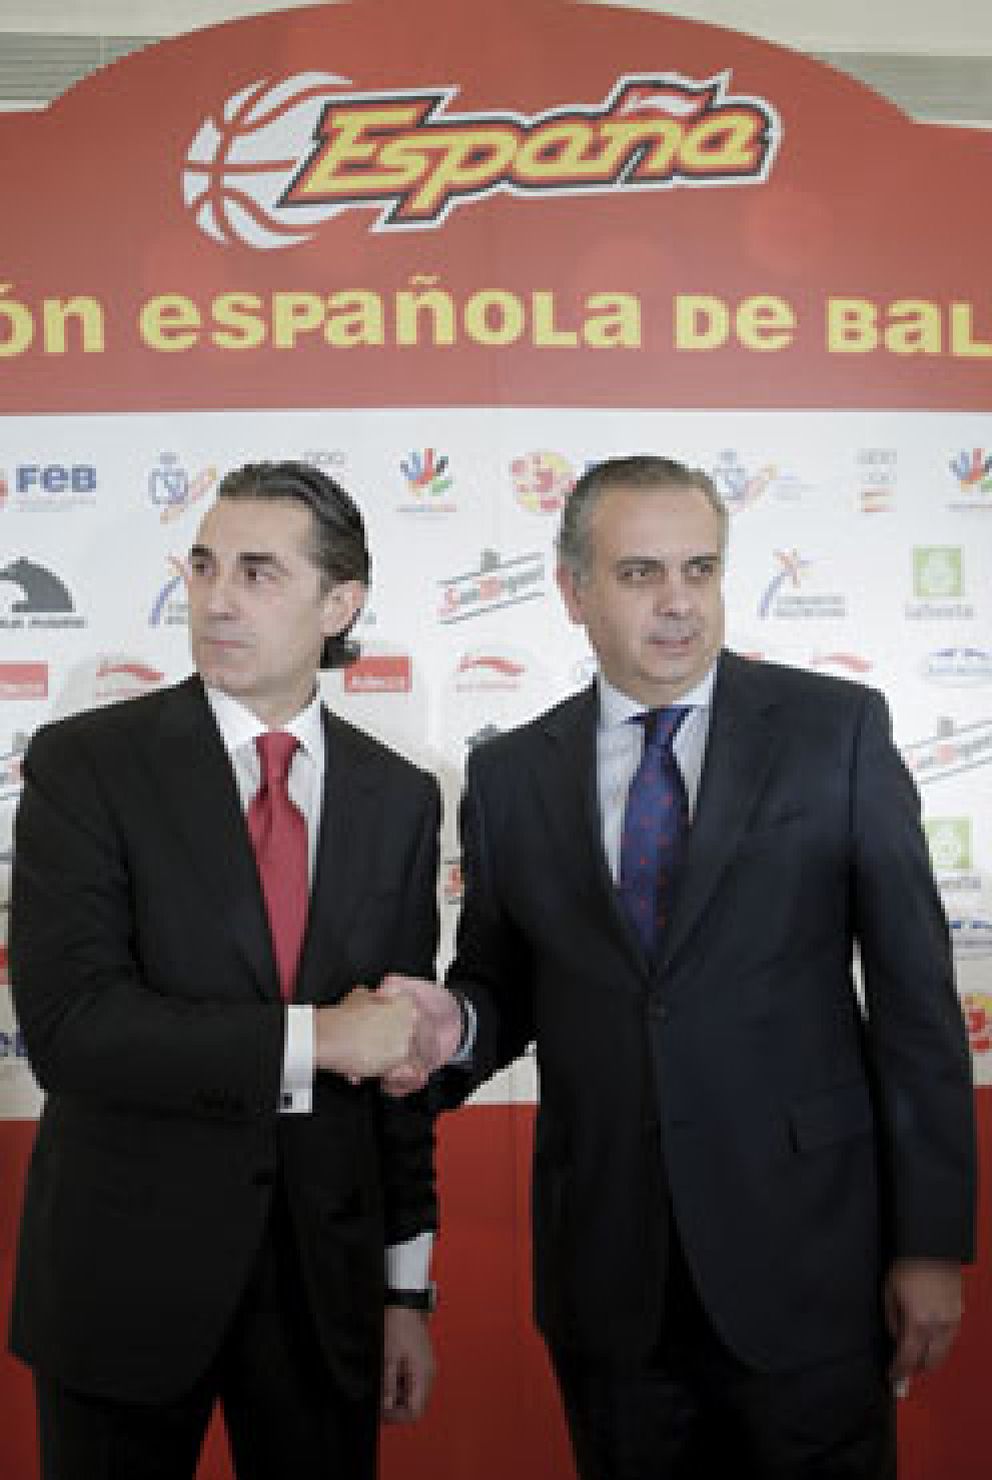 Foto: Scariolo buscará el "camino para que España sea mejor"